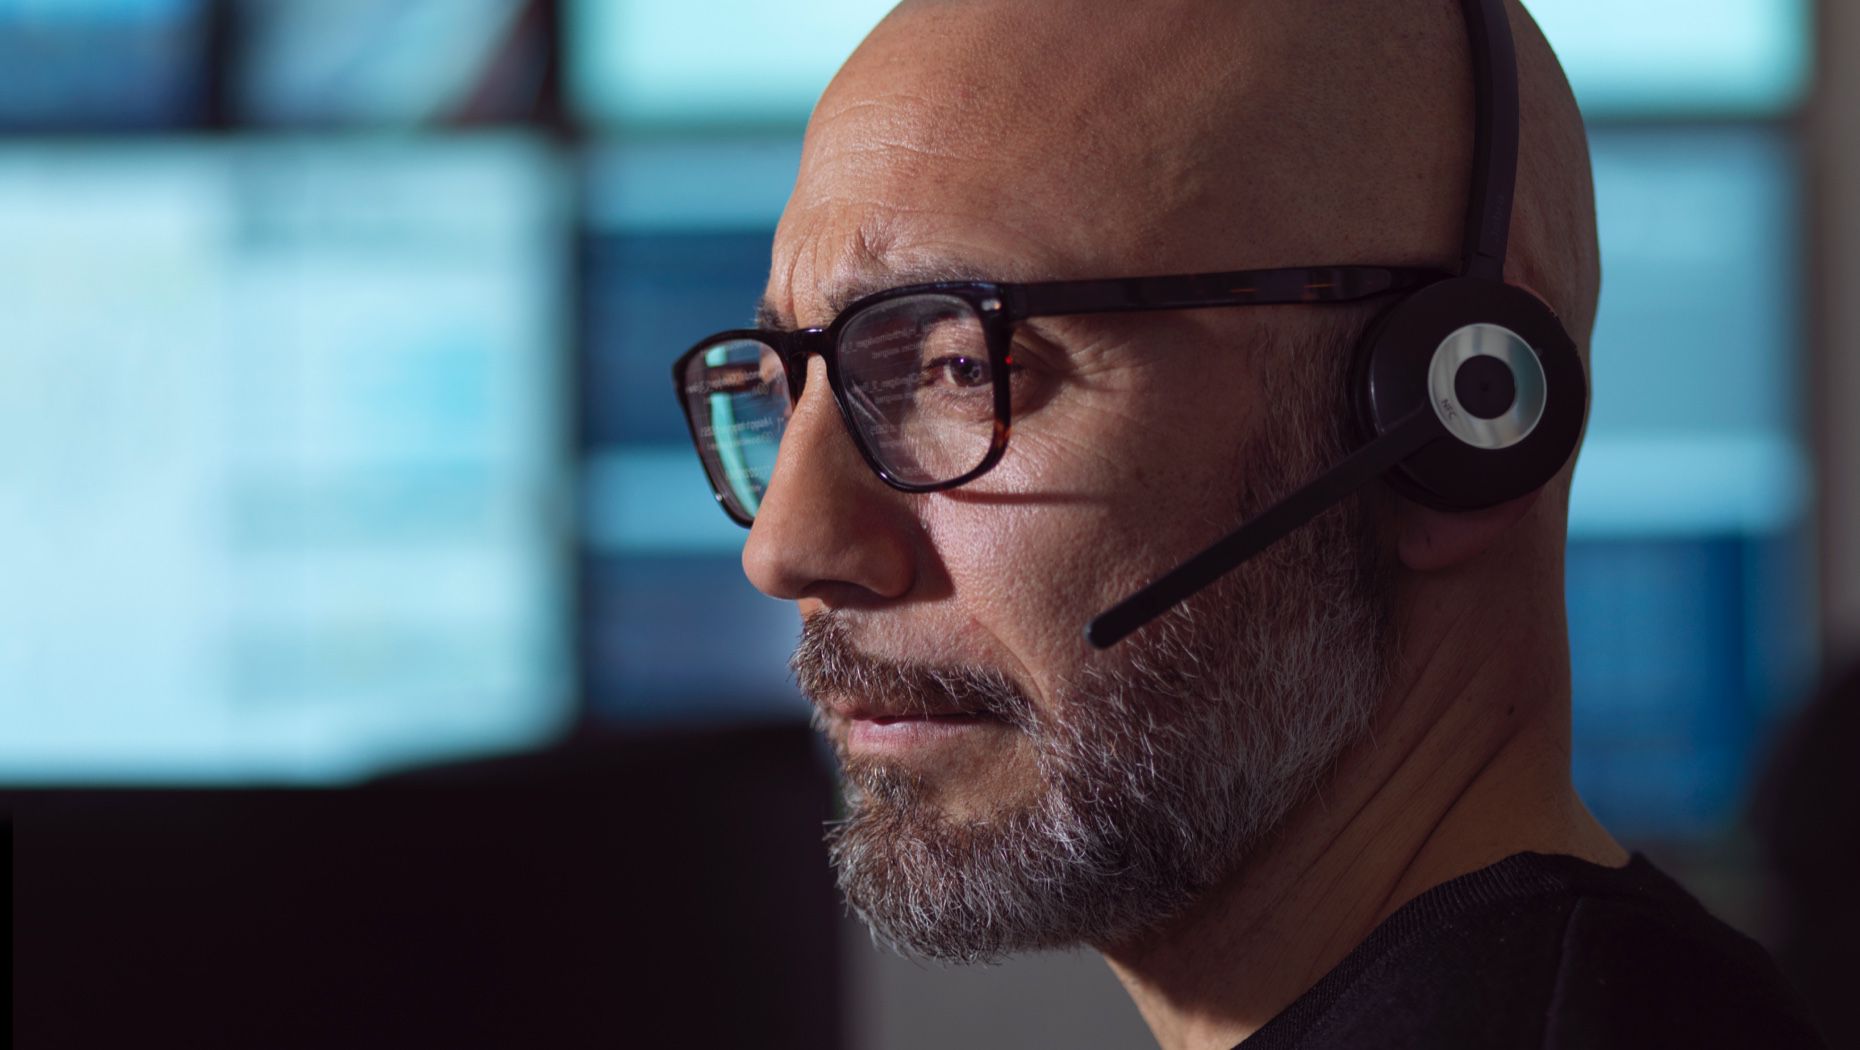 Close-up van een man met een bril en een headset met microfoon die naar een computerscherm kijkt.